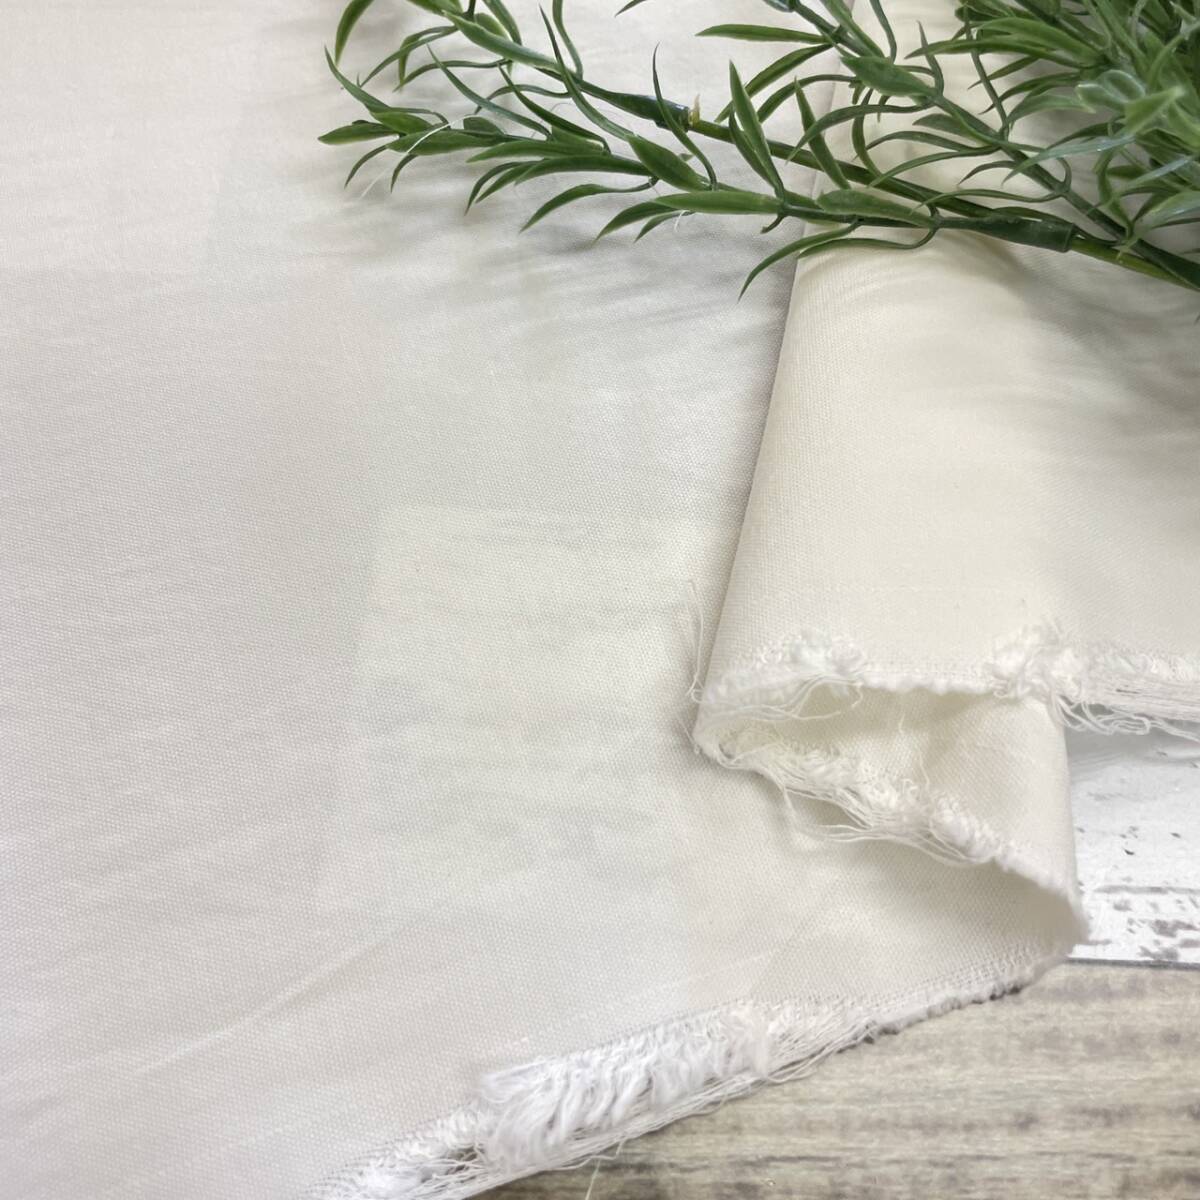  хлопок 100% шайба обработка oks ткань ткань длина 3m ширина 115cm ткань хлопок 100% белой серии сырой .*go15/2/4